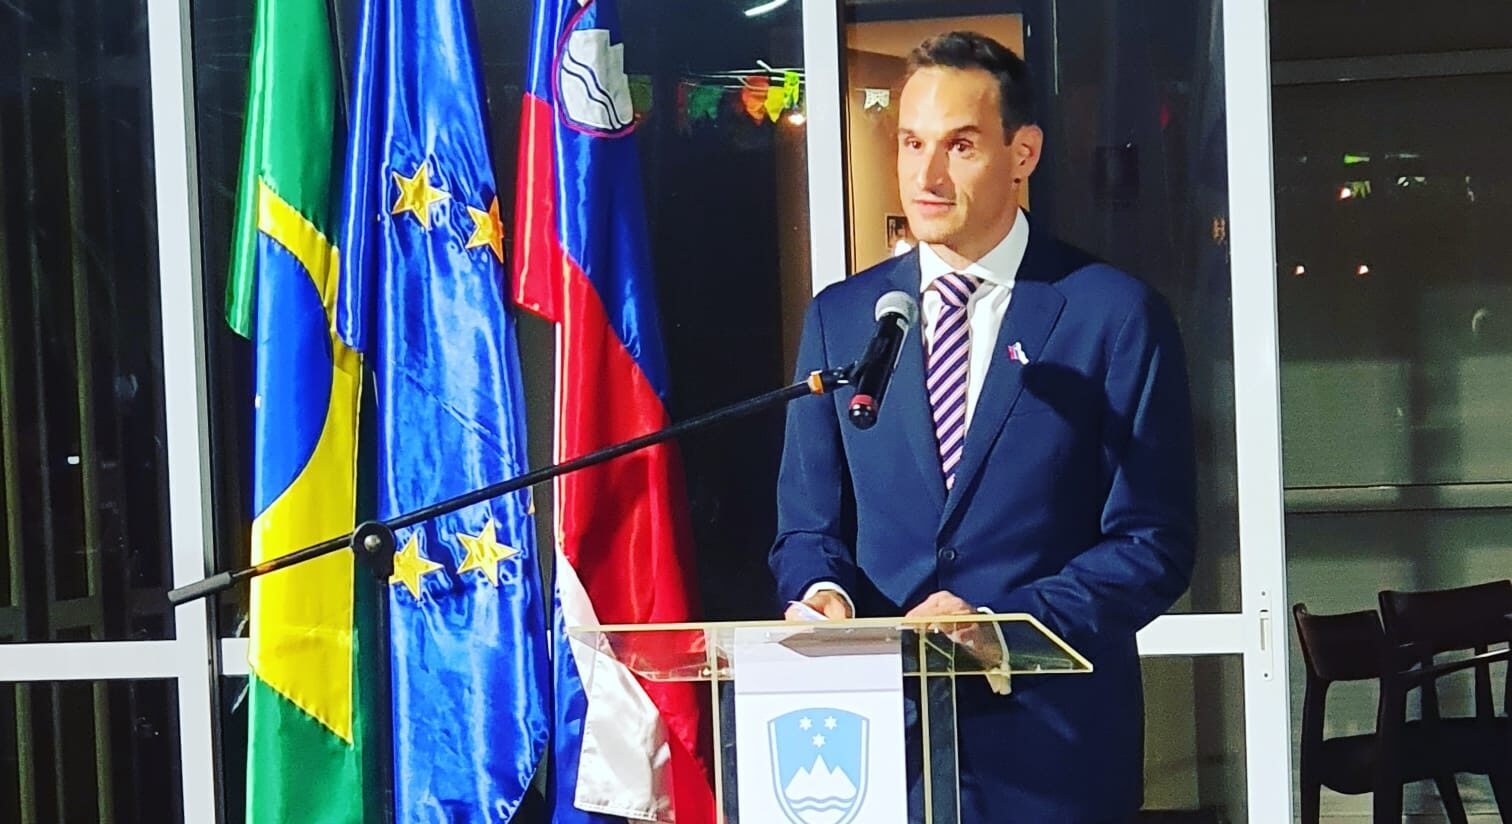 Embaixador da Eslovênia Gorazd Rencelj comemora a independência do país